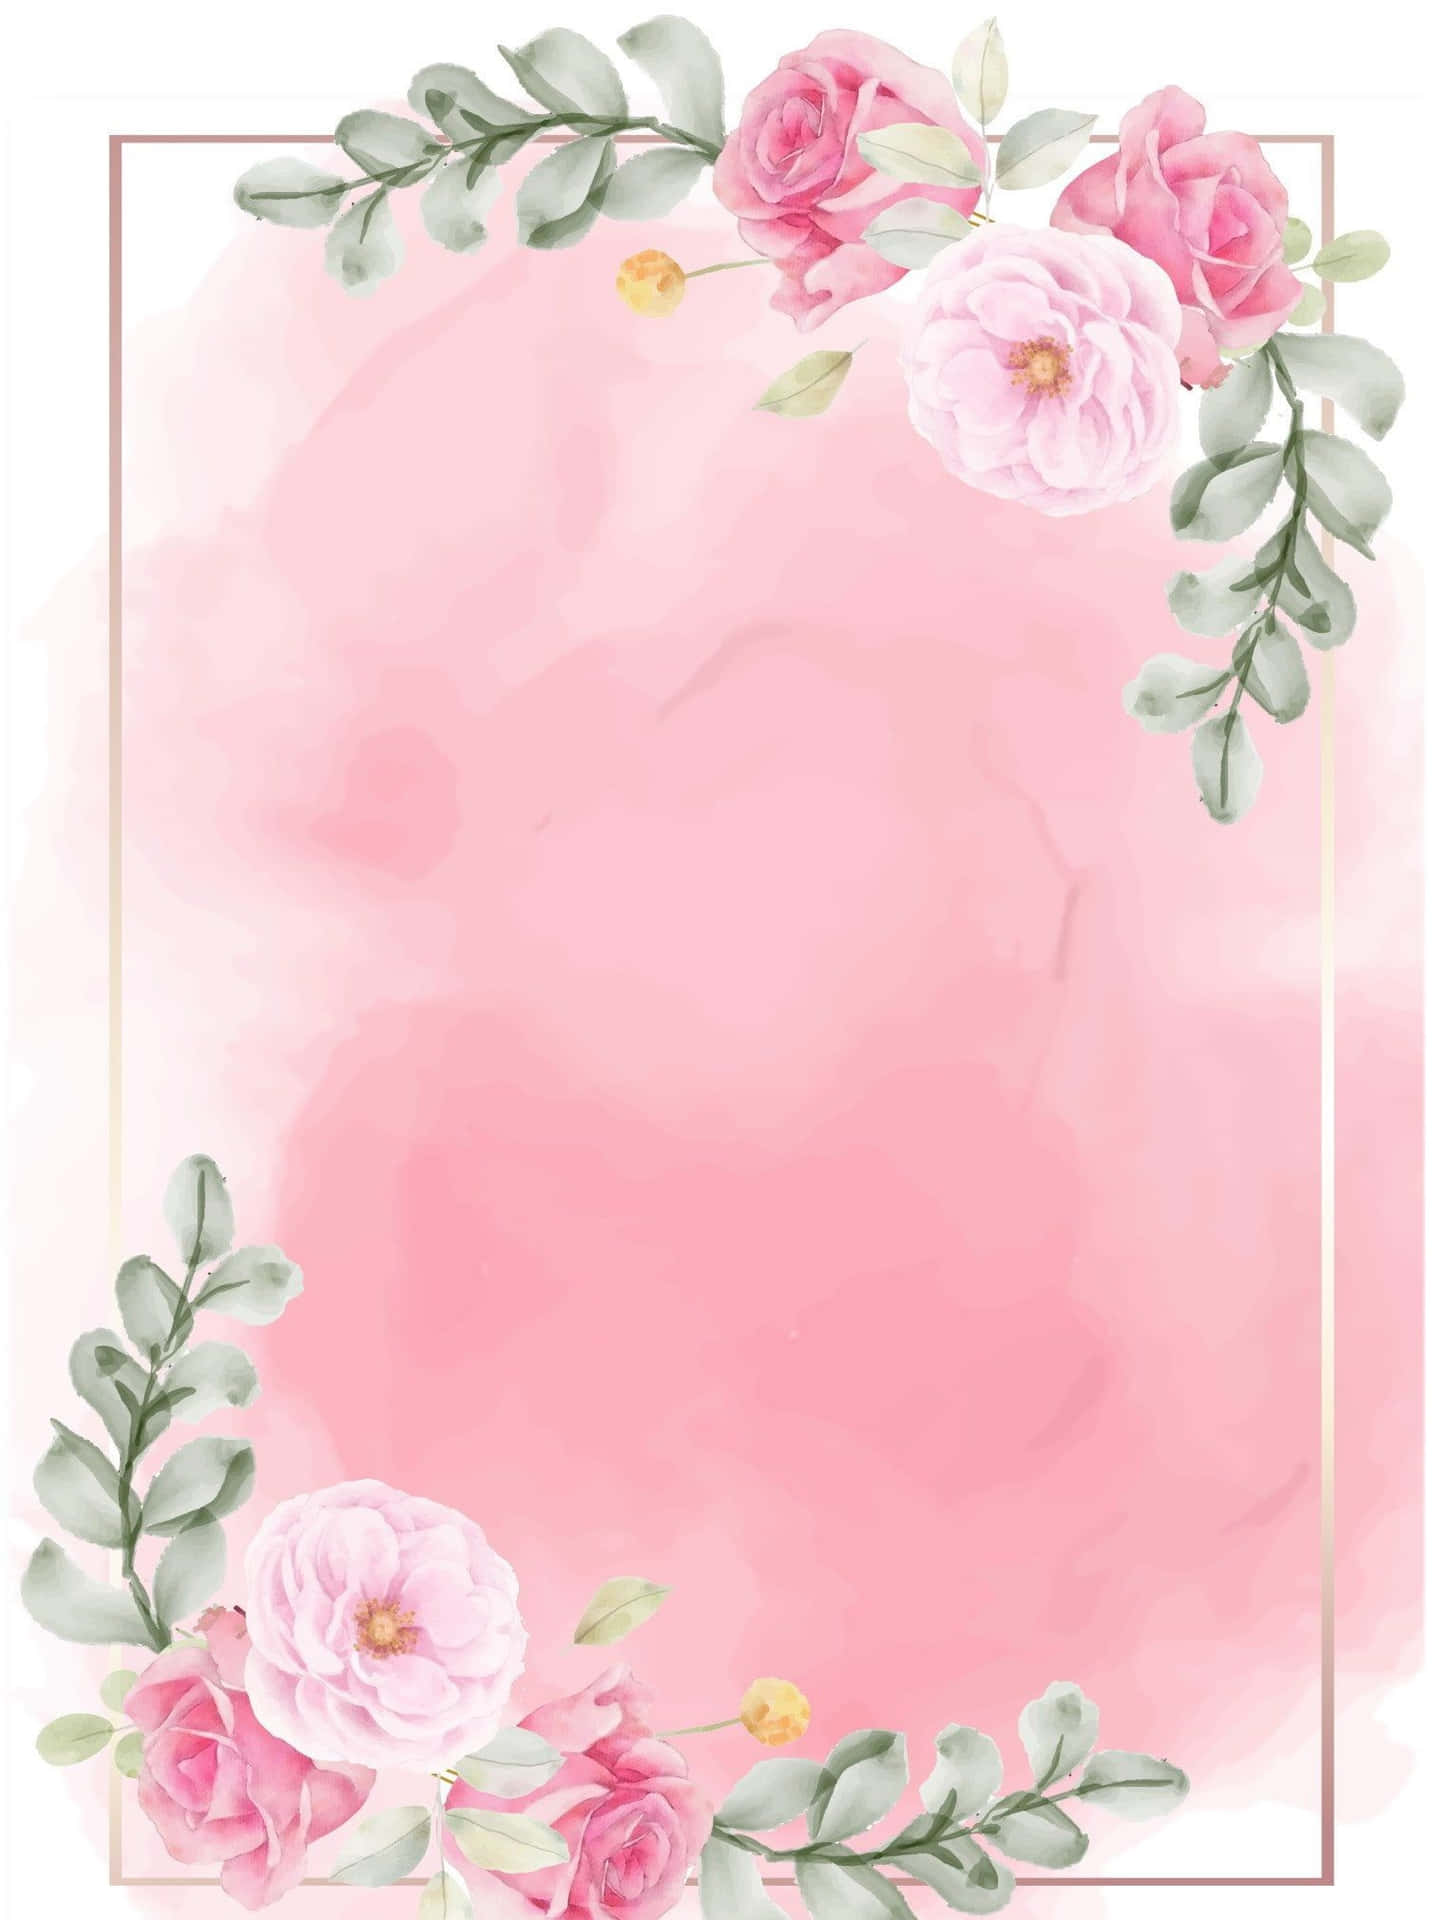 Undelicato Fiore Rosa In Piena Fioritura, Circondato Da Foglie Verde Lussureggianti.